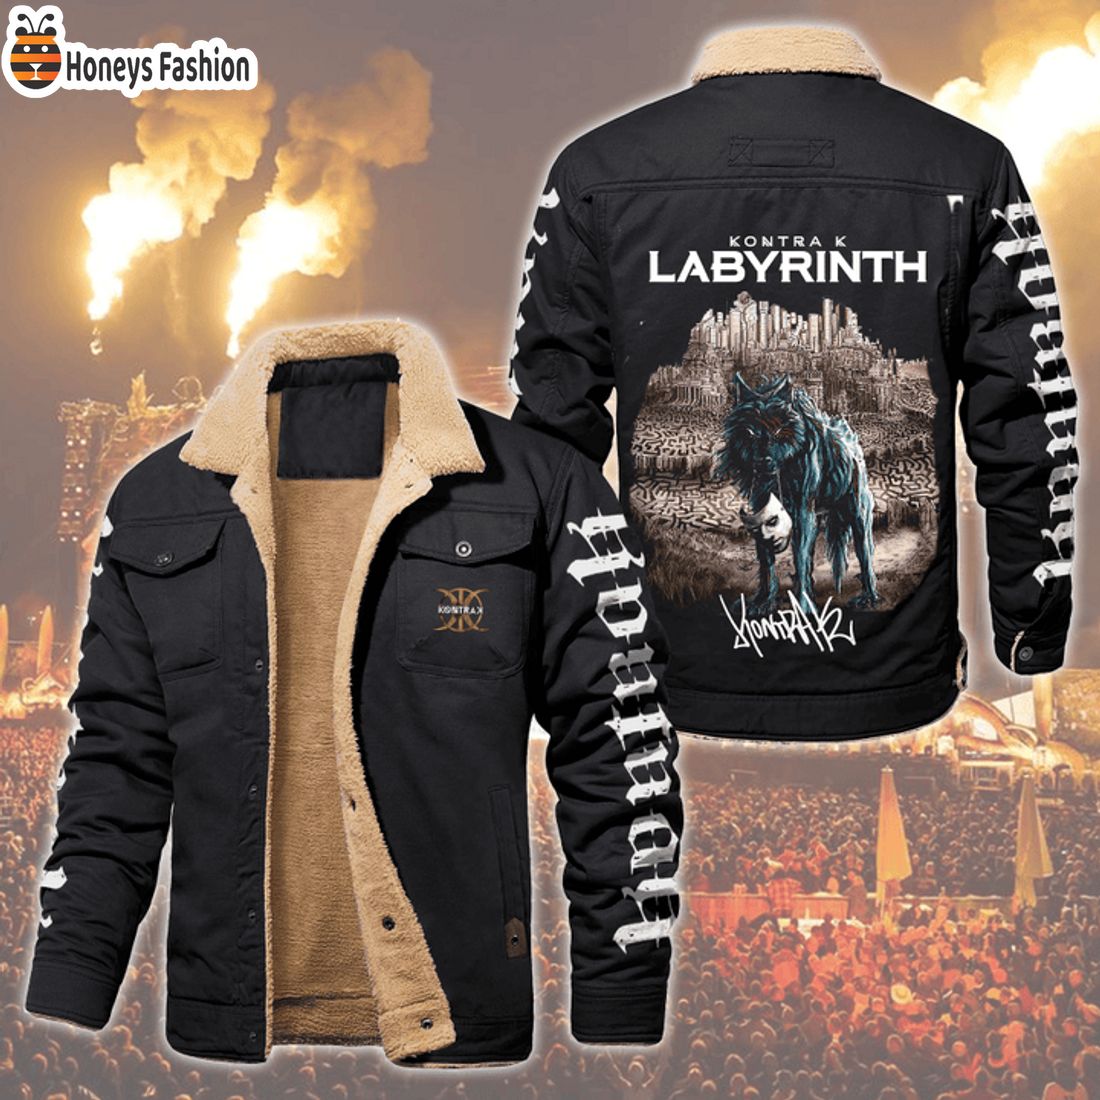 HOT Kontra K Labyrinth Fleece Leather Jacket